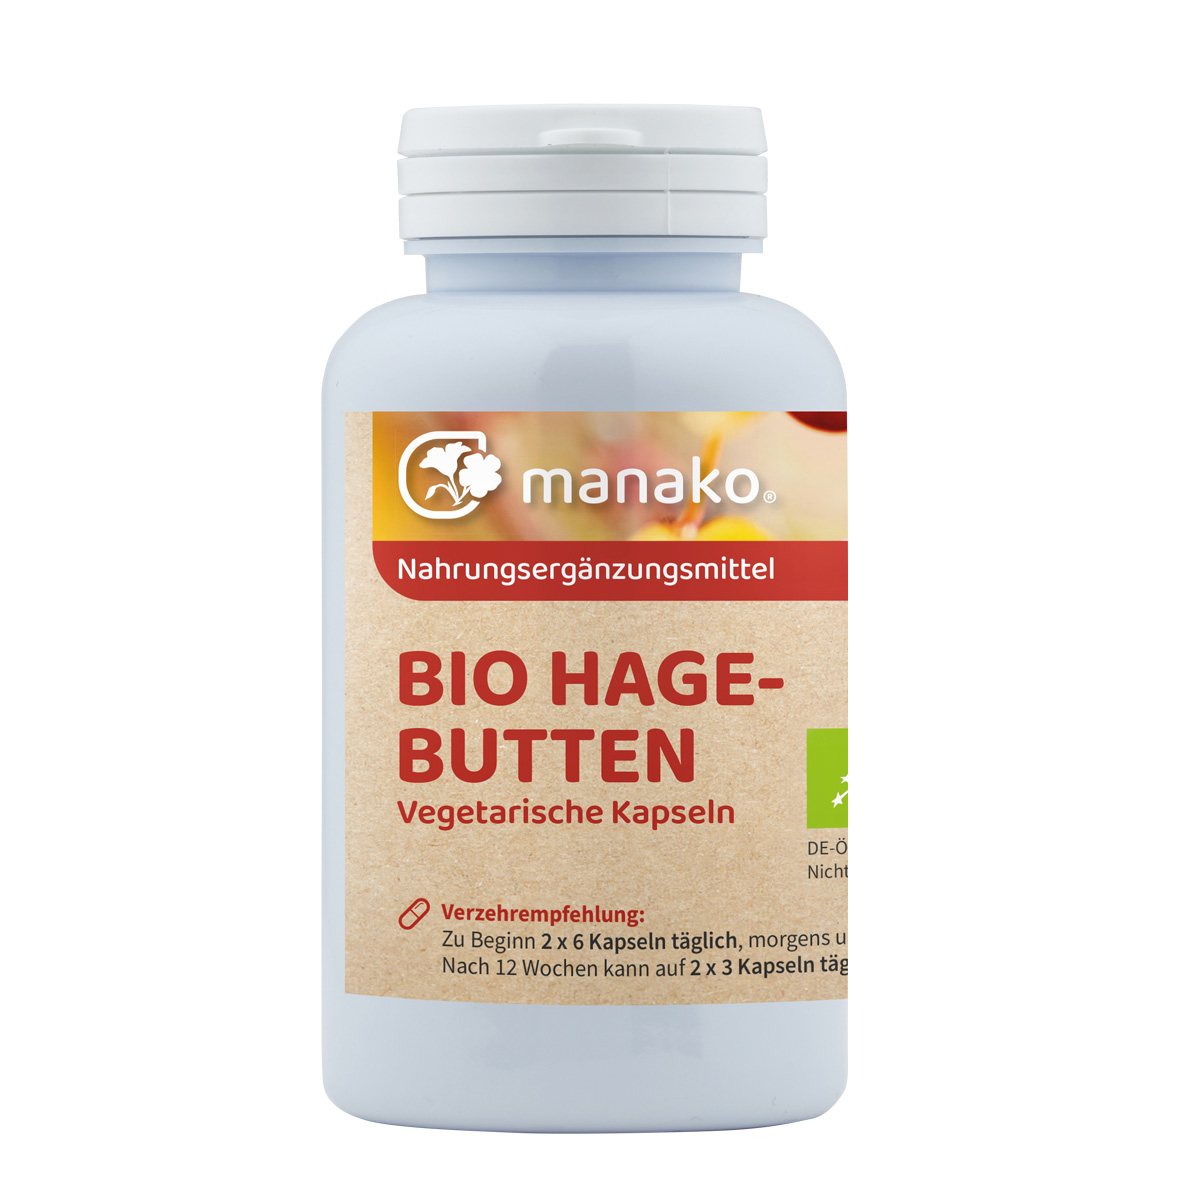 manako BIO Hagebutten vegetarische Kaspeln, 120 Stück a 500 mg, Dose a 72 g